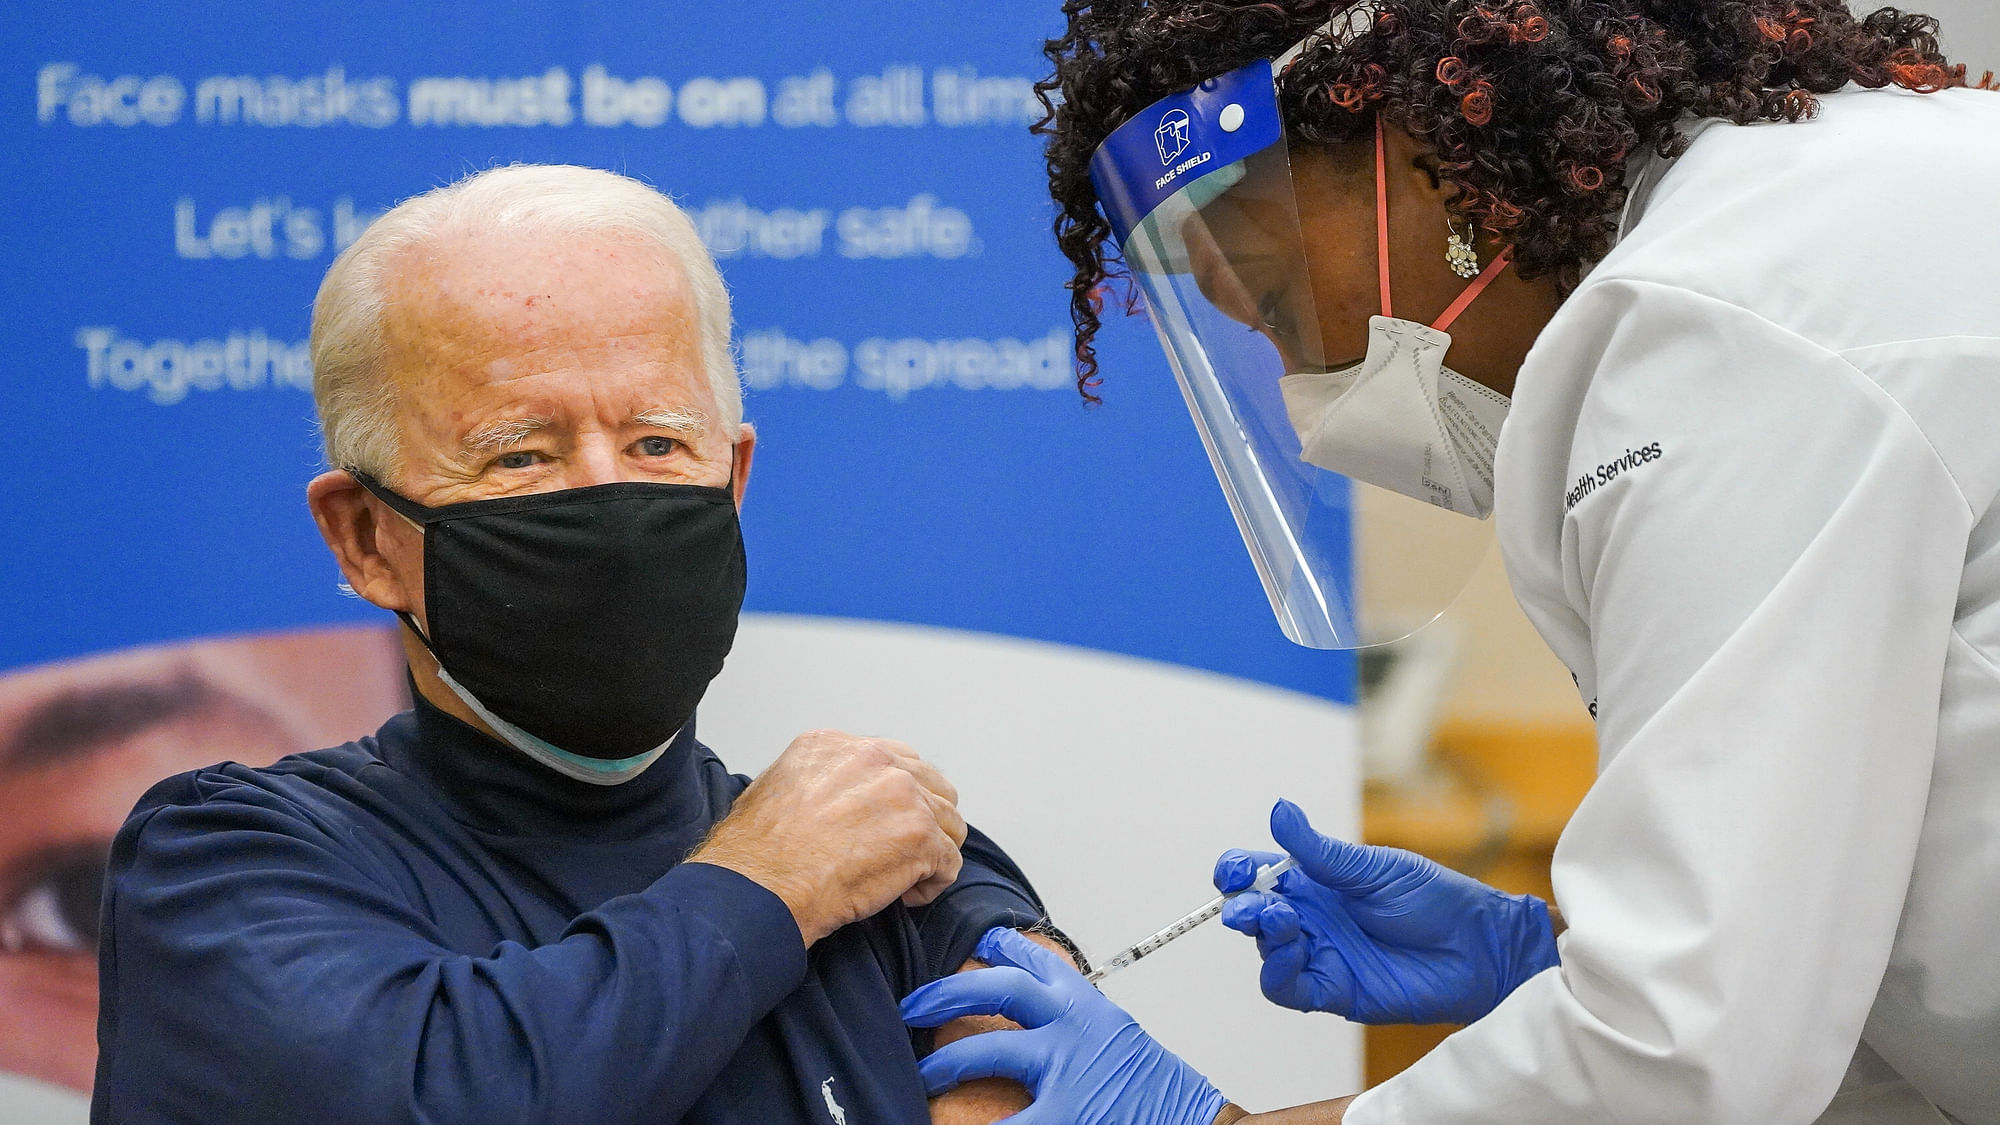 Joe Biden receiving the Pfizer vaccine.